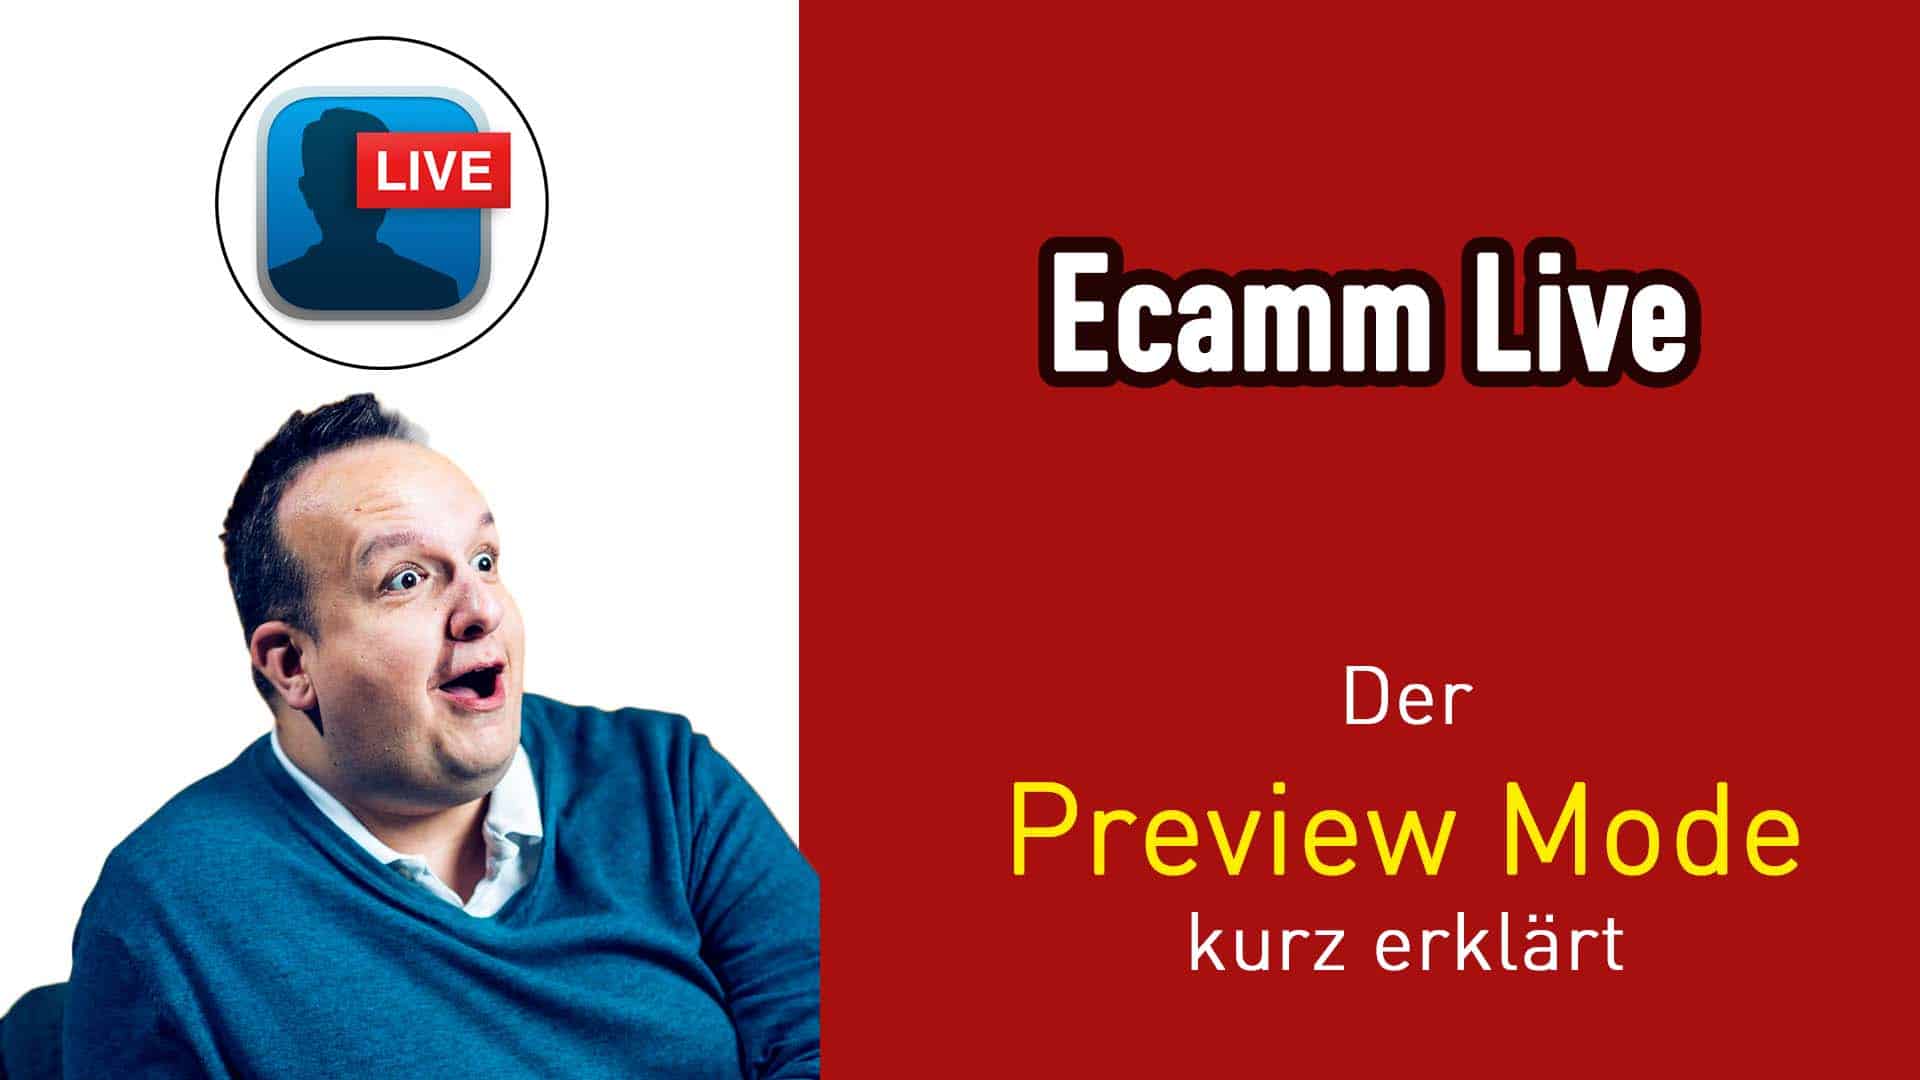 Der Preview Mode in Ecamm Live und wie man mit Ihm bedient.